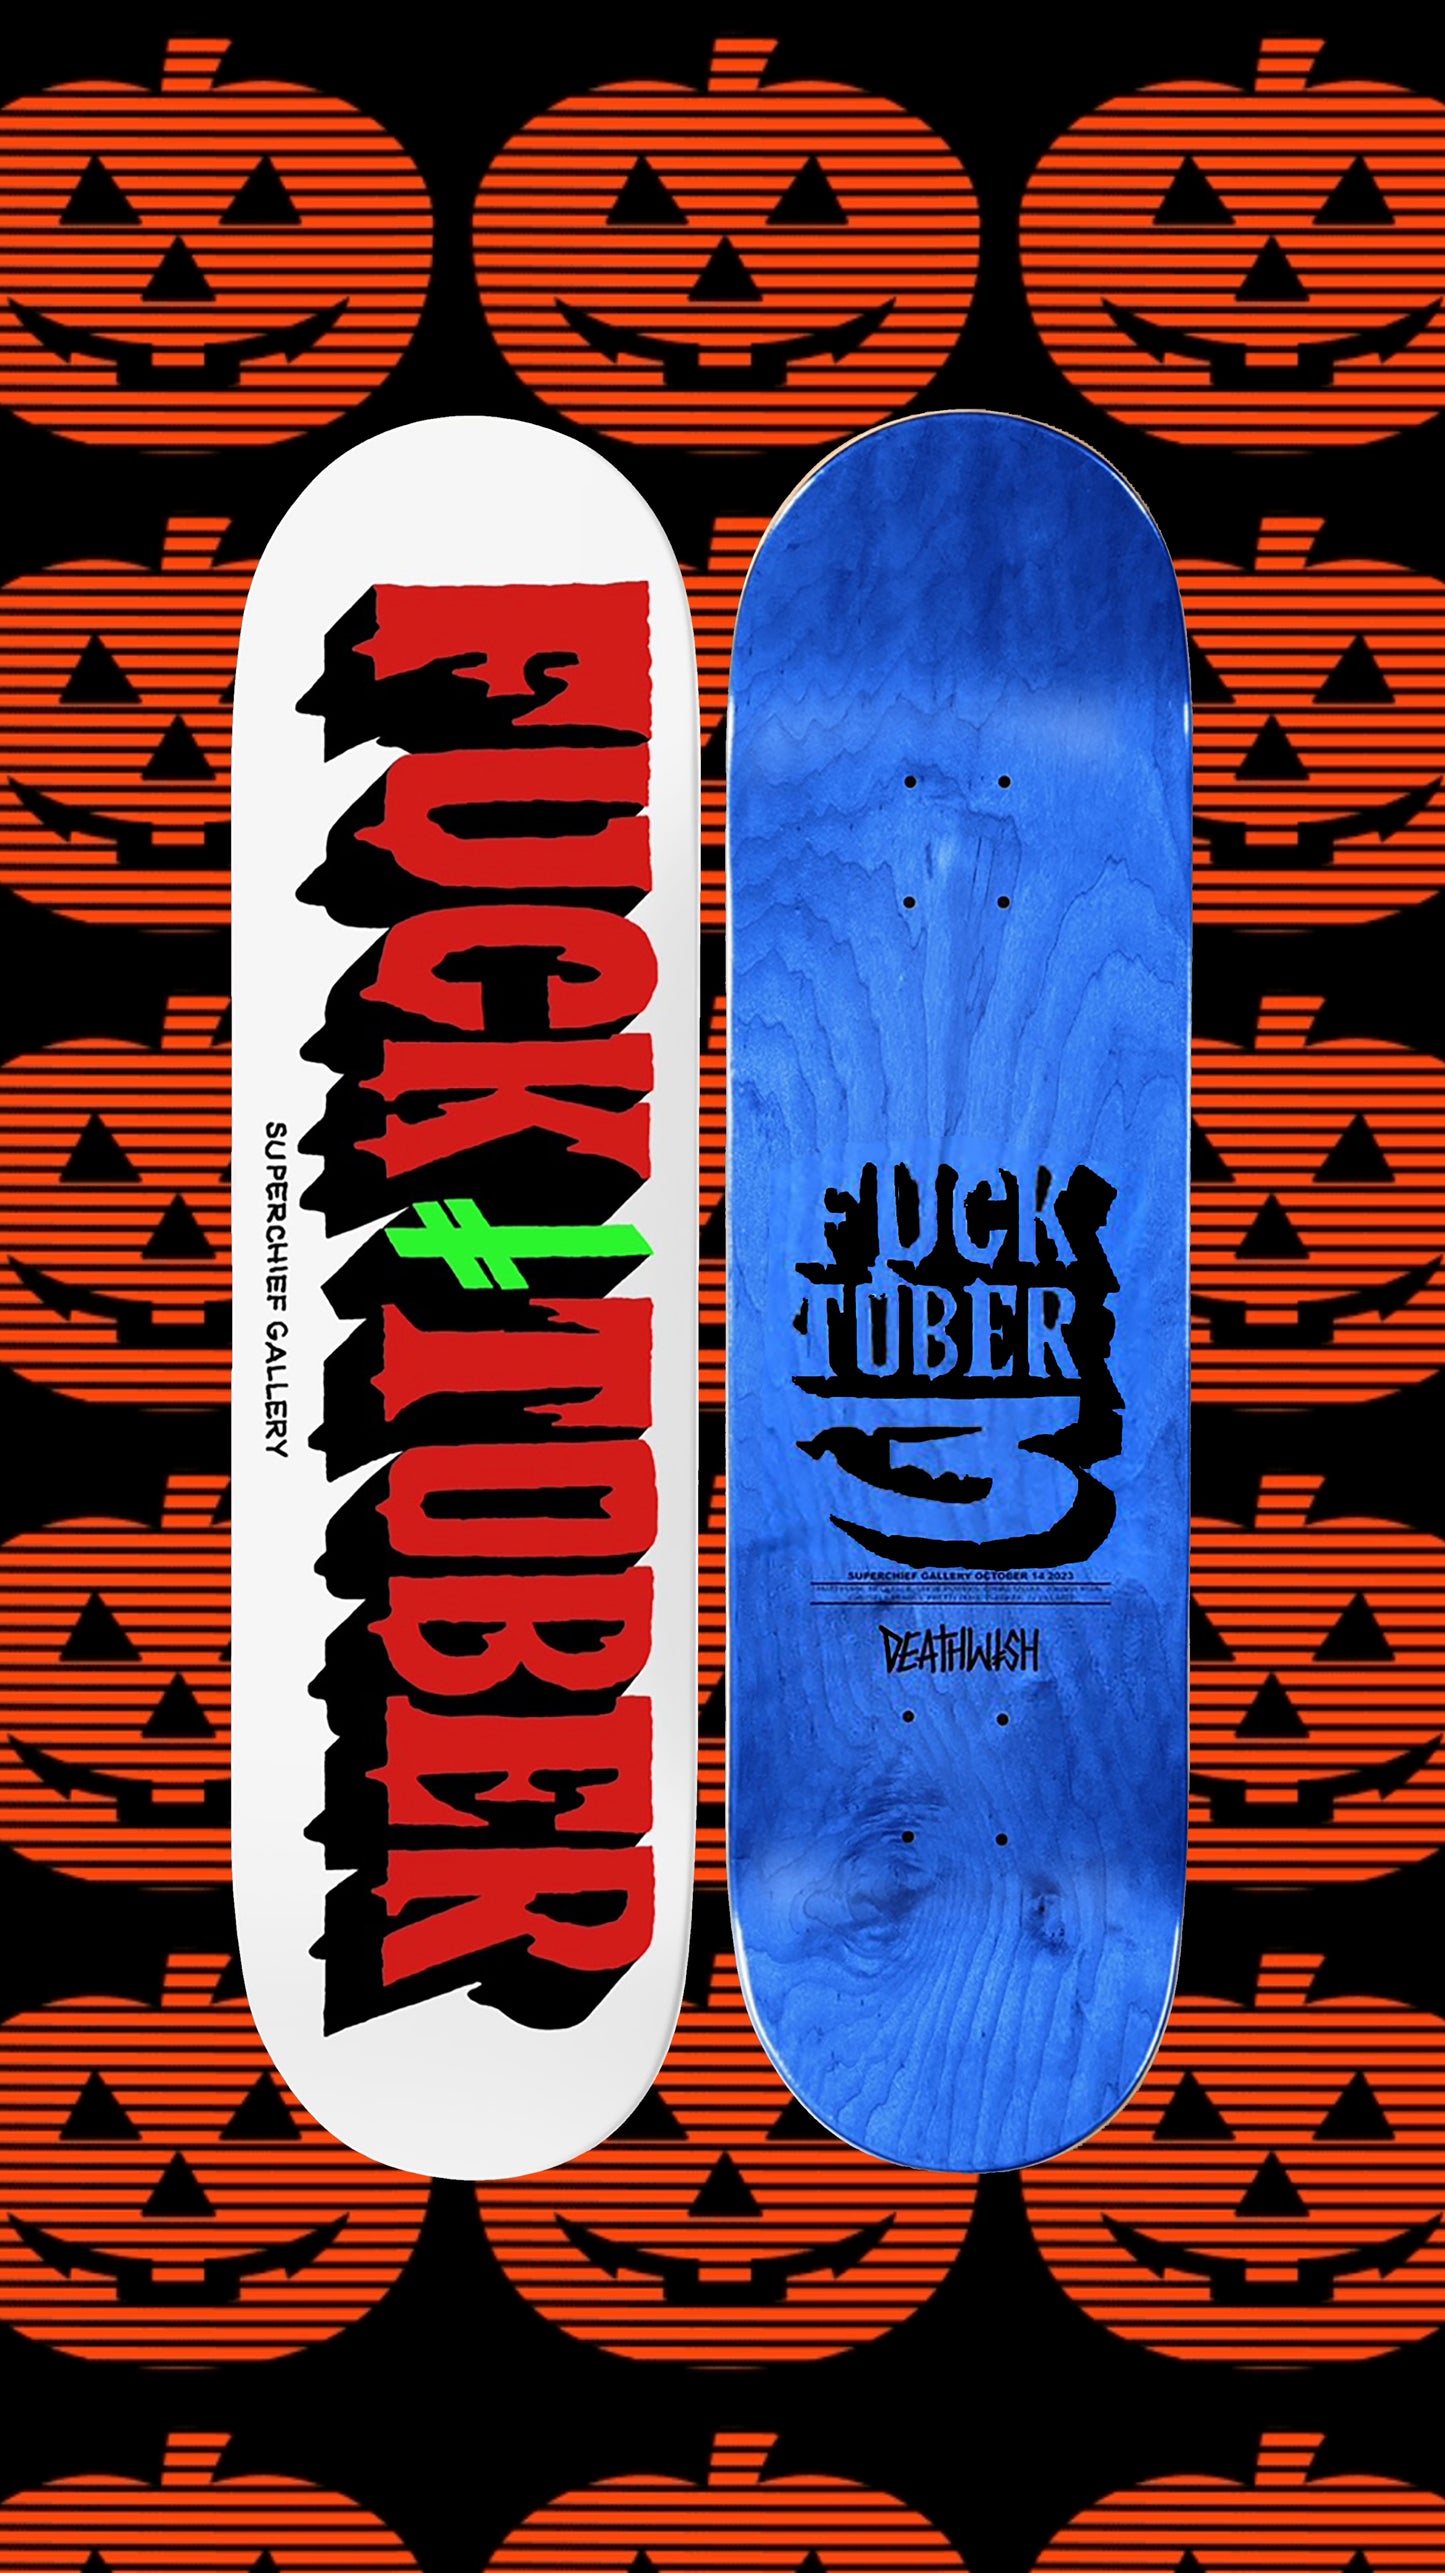 DEATHWISH X FUCKTOBER Collab Skate Deck